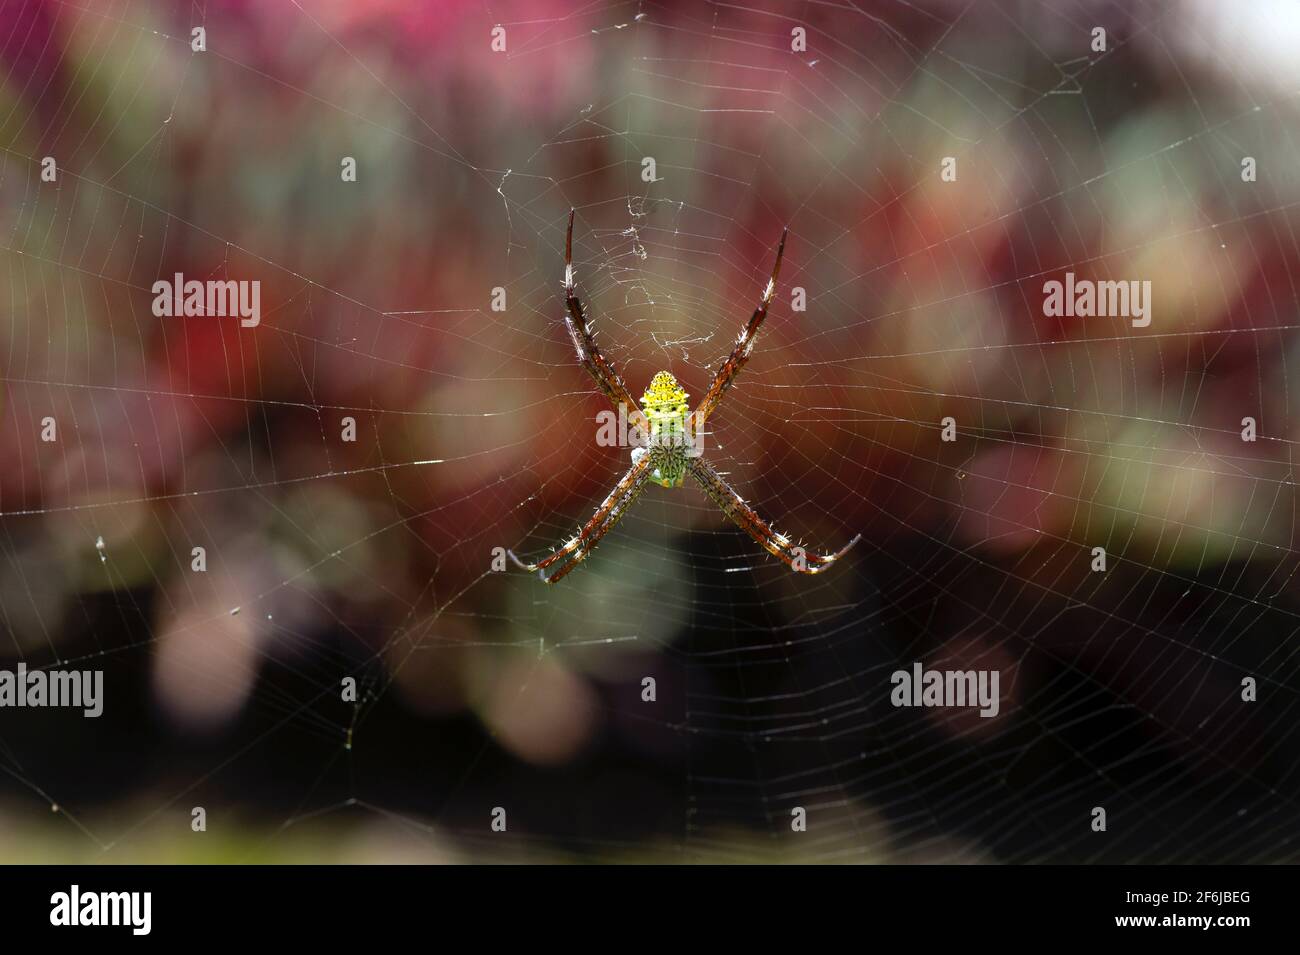 Eine gelbe Spinne und ihr unordentliches Netz, flacher Fokus mit Bokeh Hintergrund Stockfoto